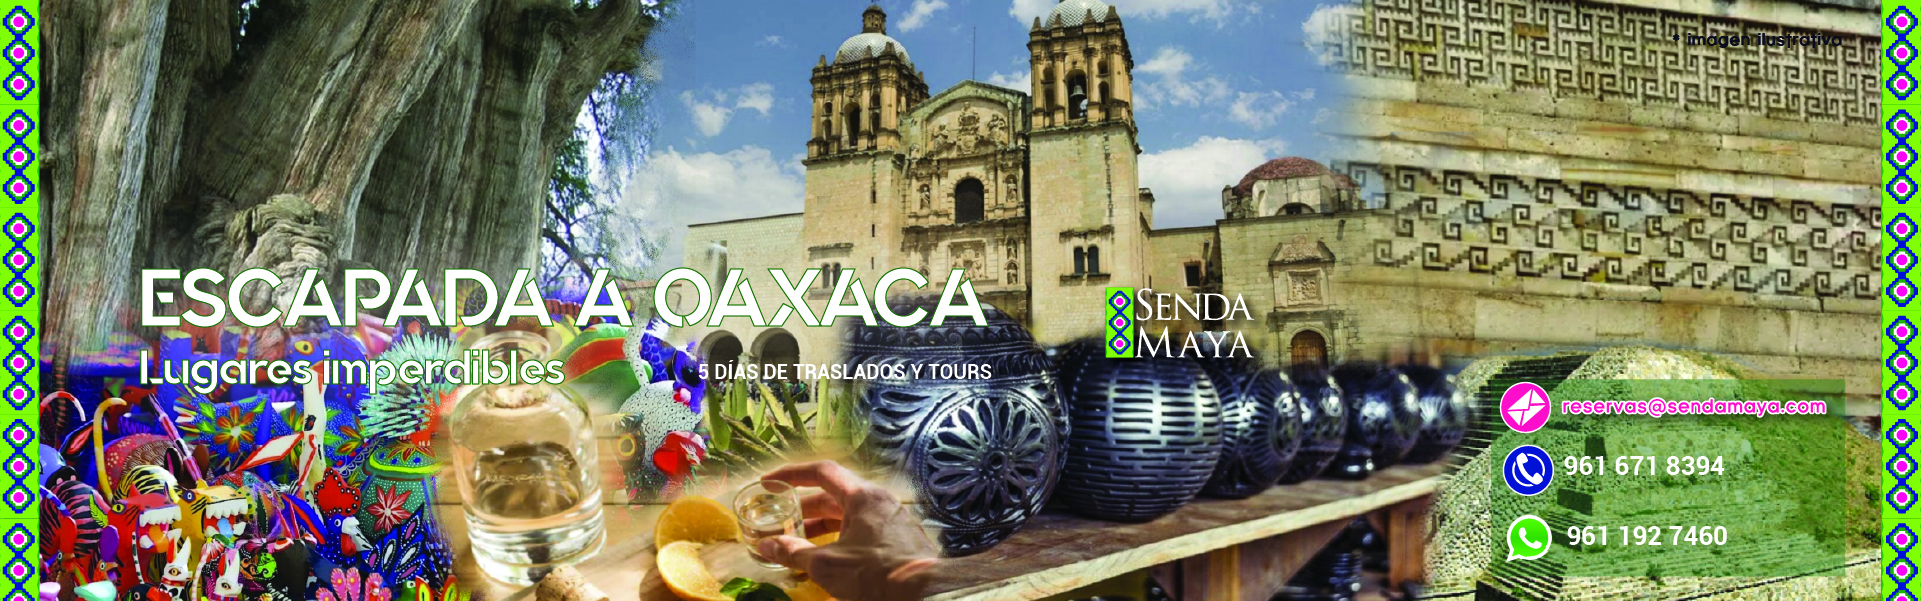 Tour Oaxaca 5 días: ESCAPADA A OAXACA